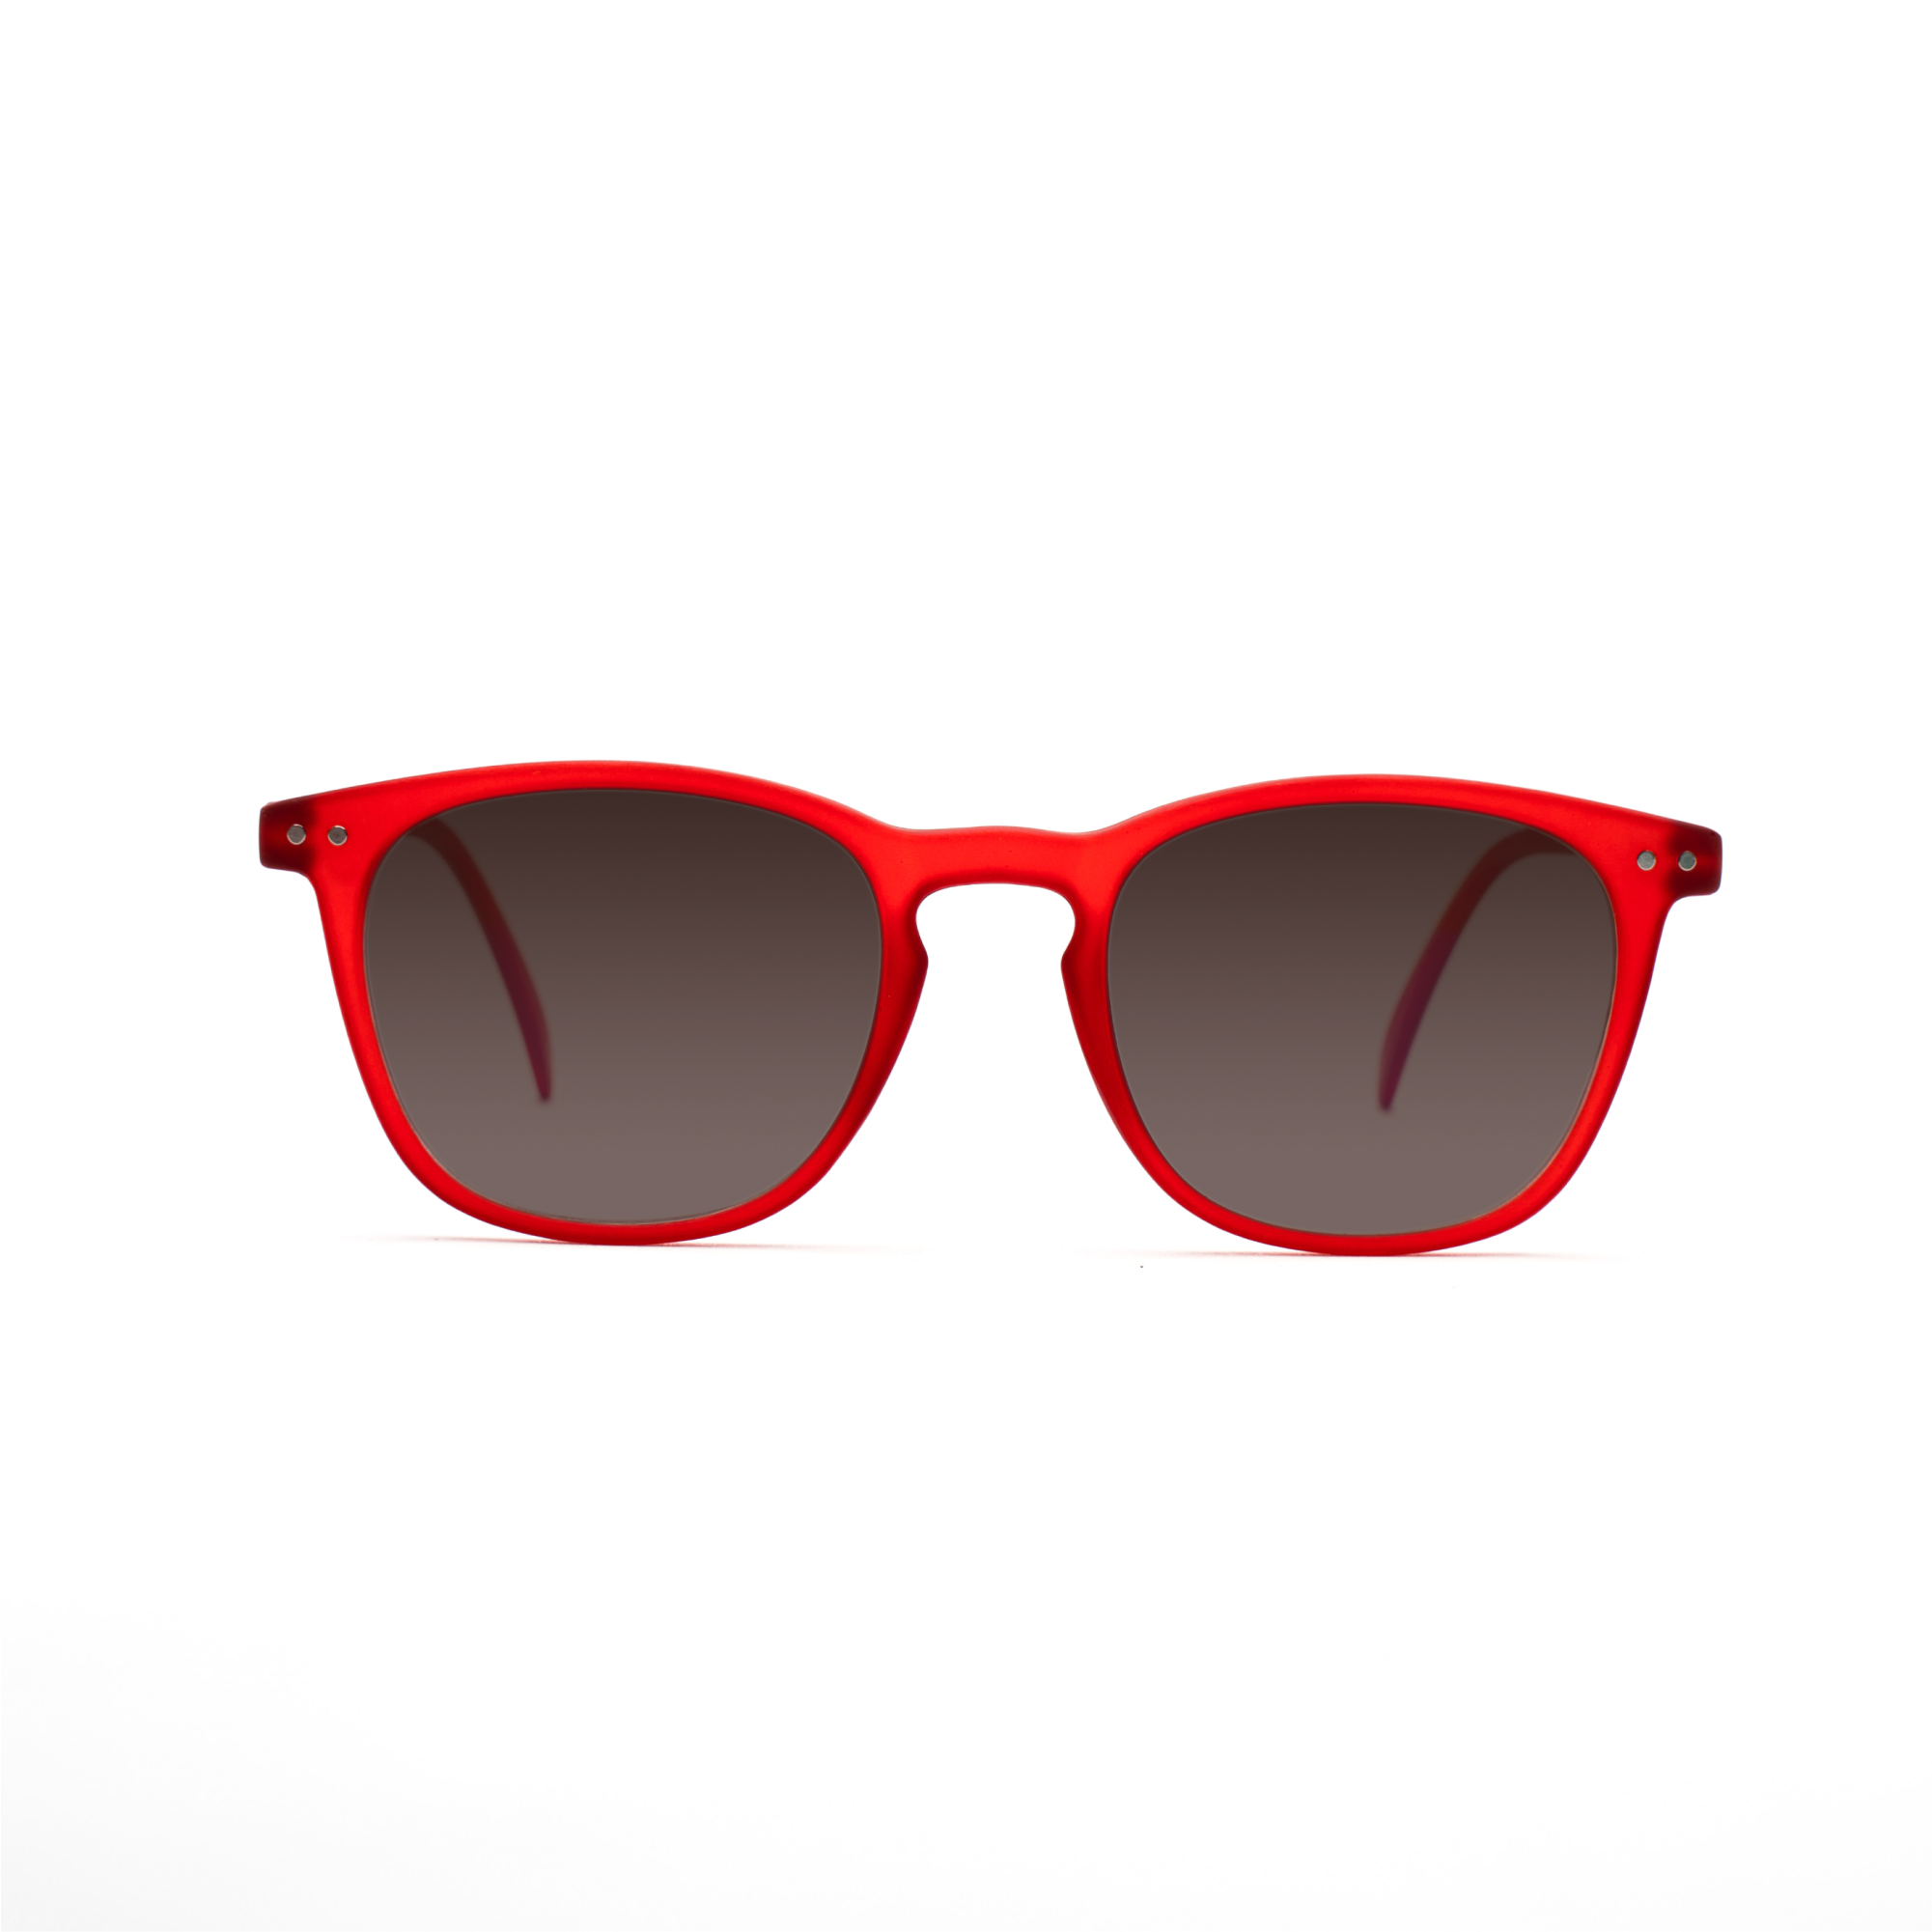 women's polarized sunglasses – William Polarised SUN w - Red